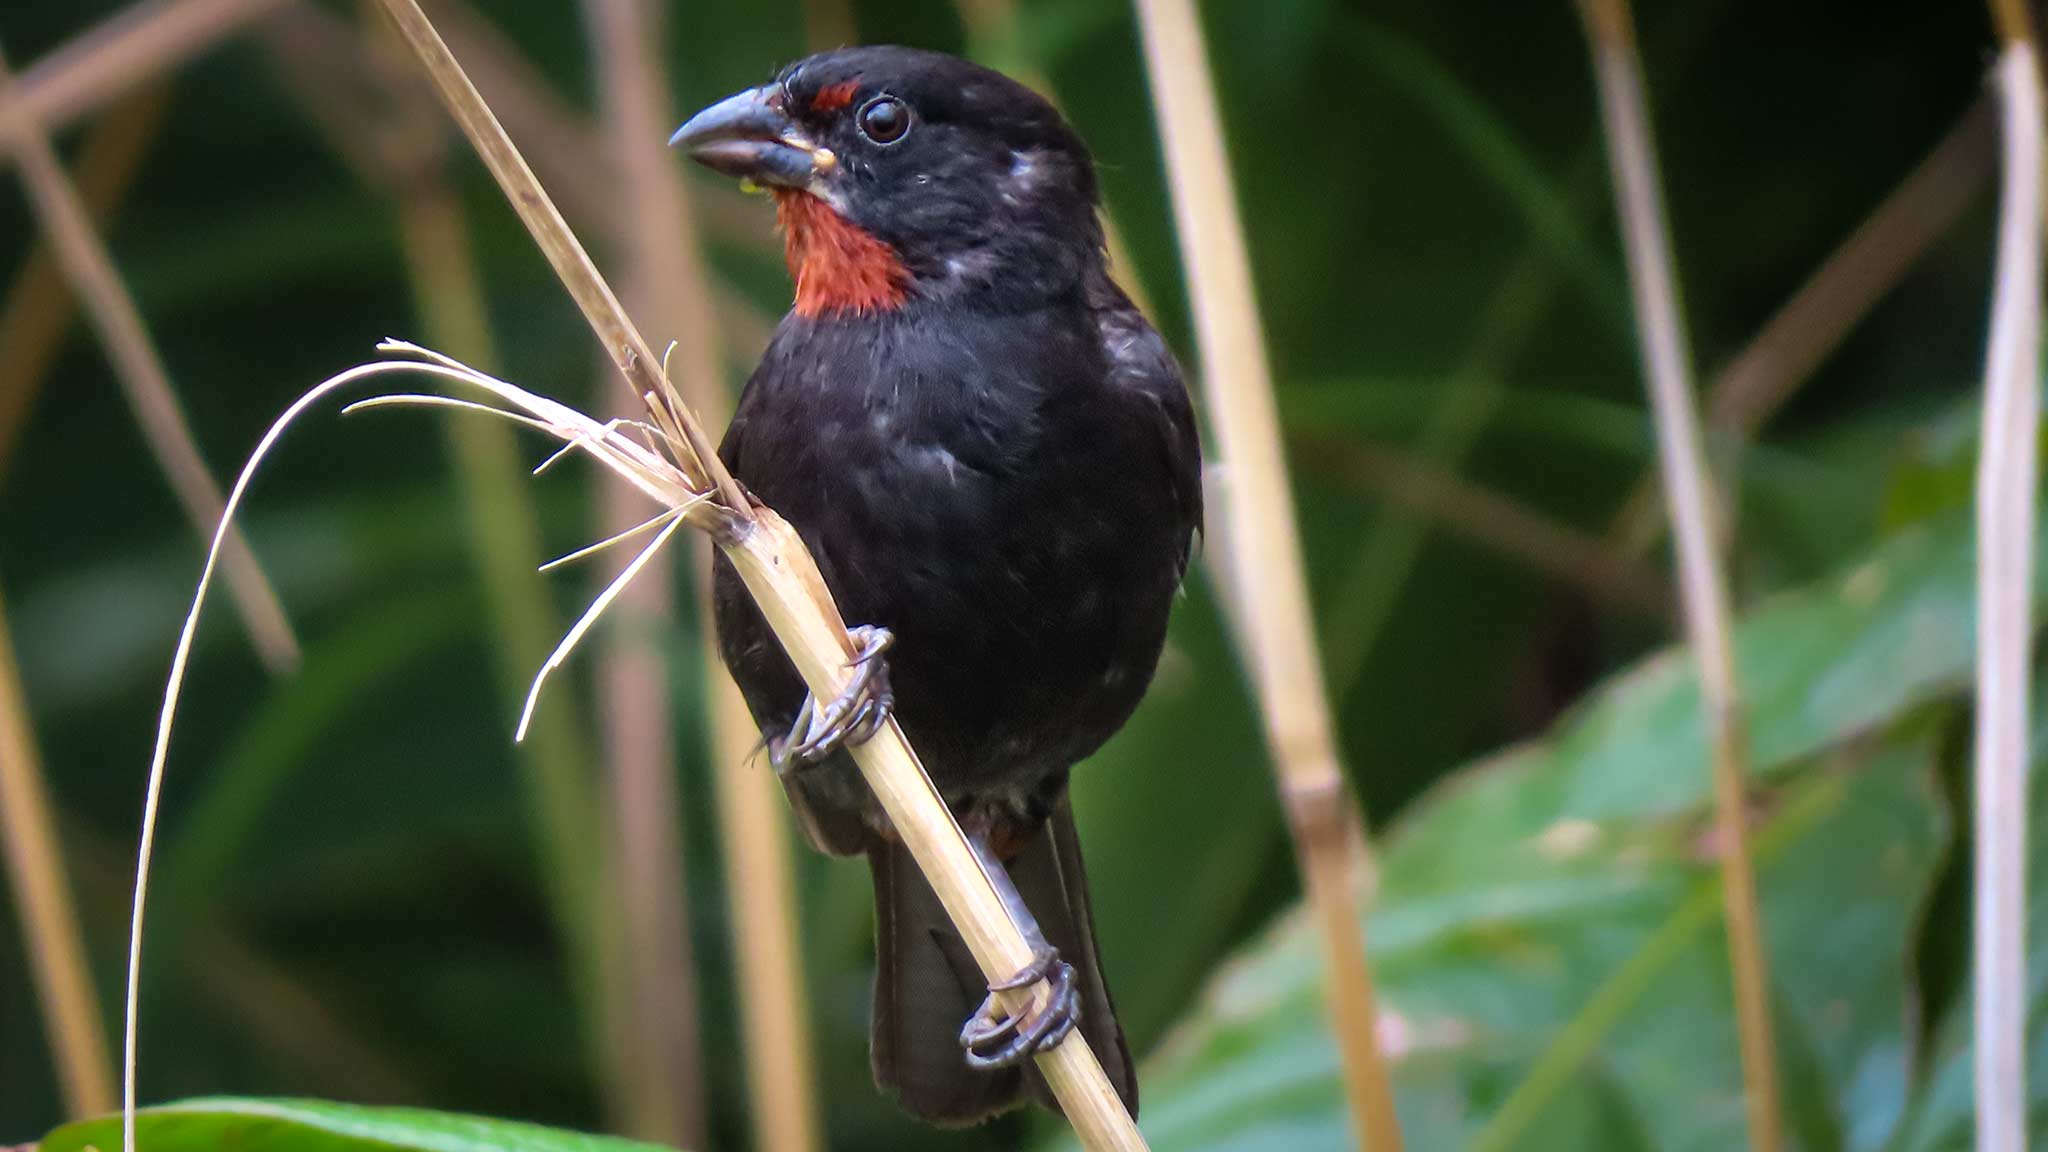 在多米尼加观鸟时发现的一只小鸟